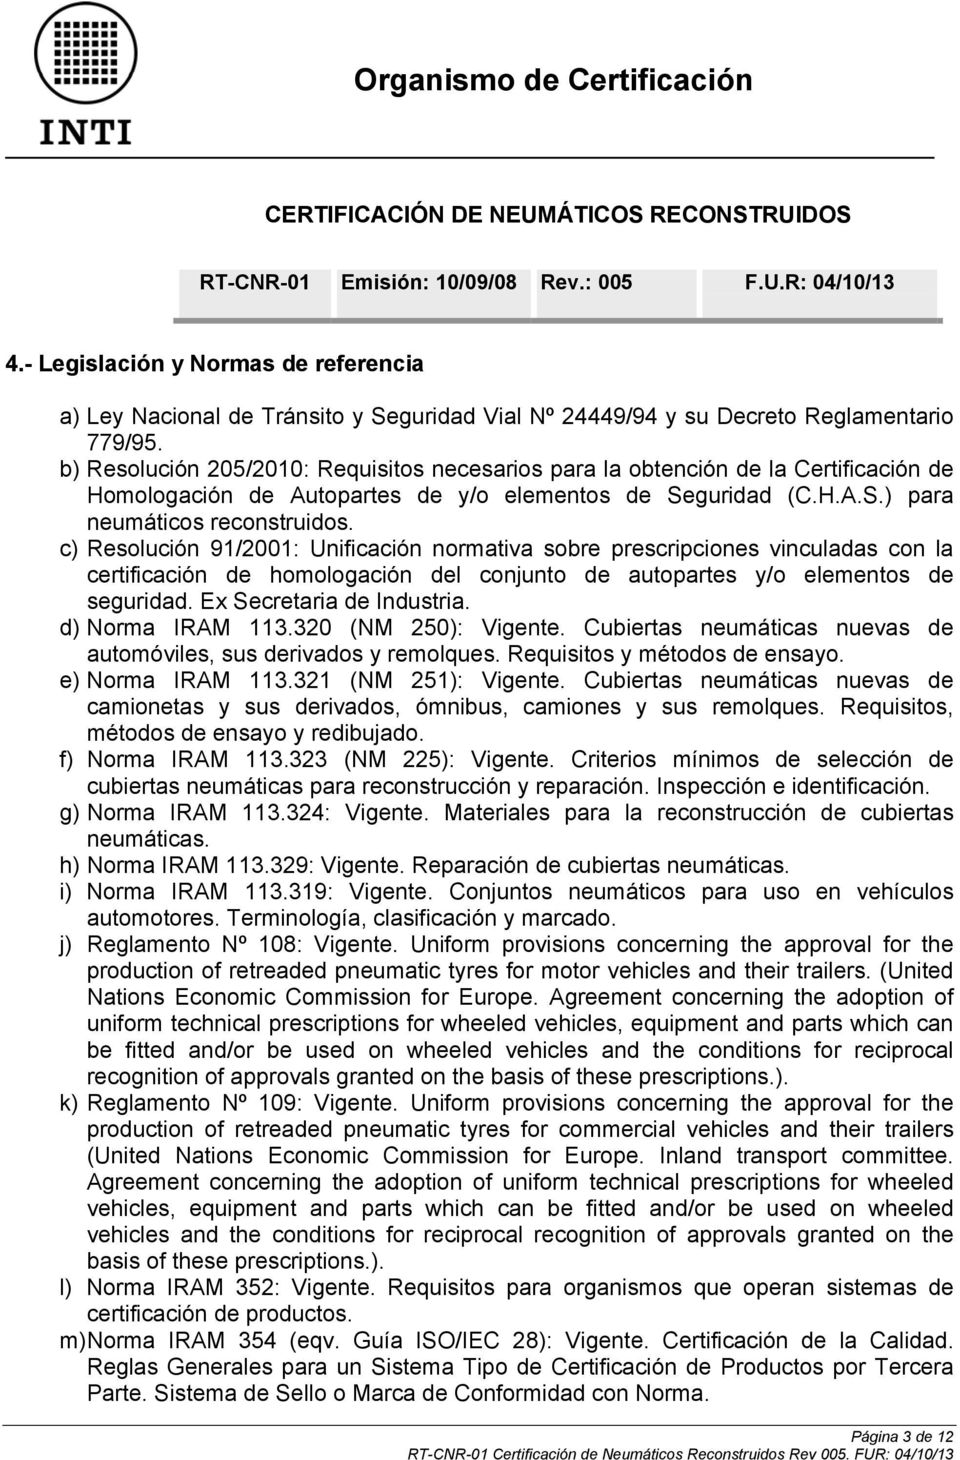 c) Resolución 91/2001: Unificación normativa sobre prescripciones vinculadas con la certificación de homologación del conjunto de autopartes y/o elementos de seguridad. Ex Secretaria de Industria.